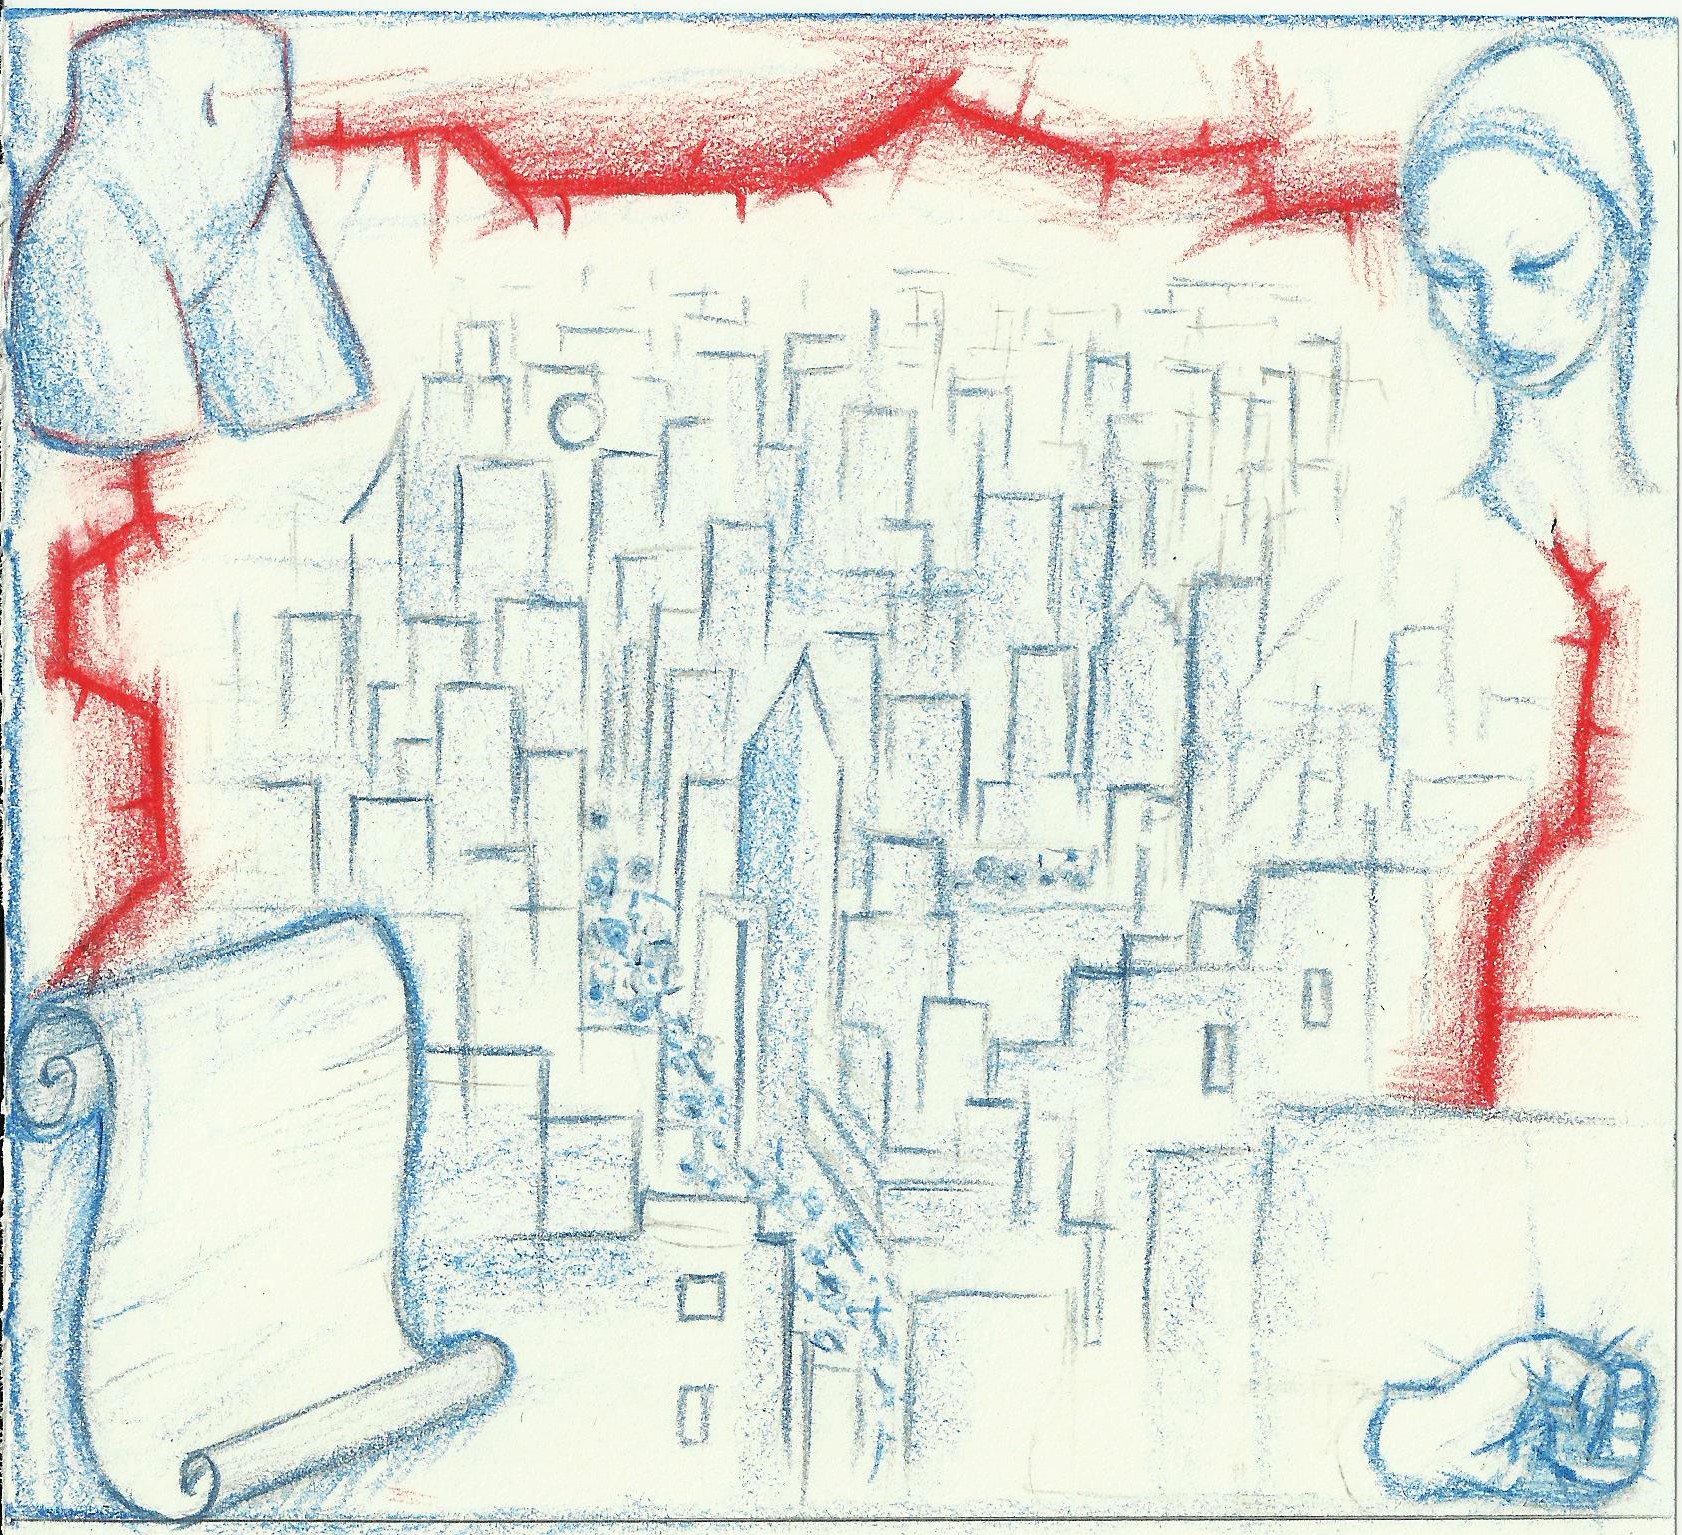 na zdjeciu widzimy rysunek przedstawiajacy zarysy budynkow czerwone kolczaste granice twarzy kobiety w turbanie piesc dolna czesc manekina oraz kartka zawinietego papieru